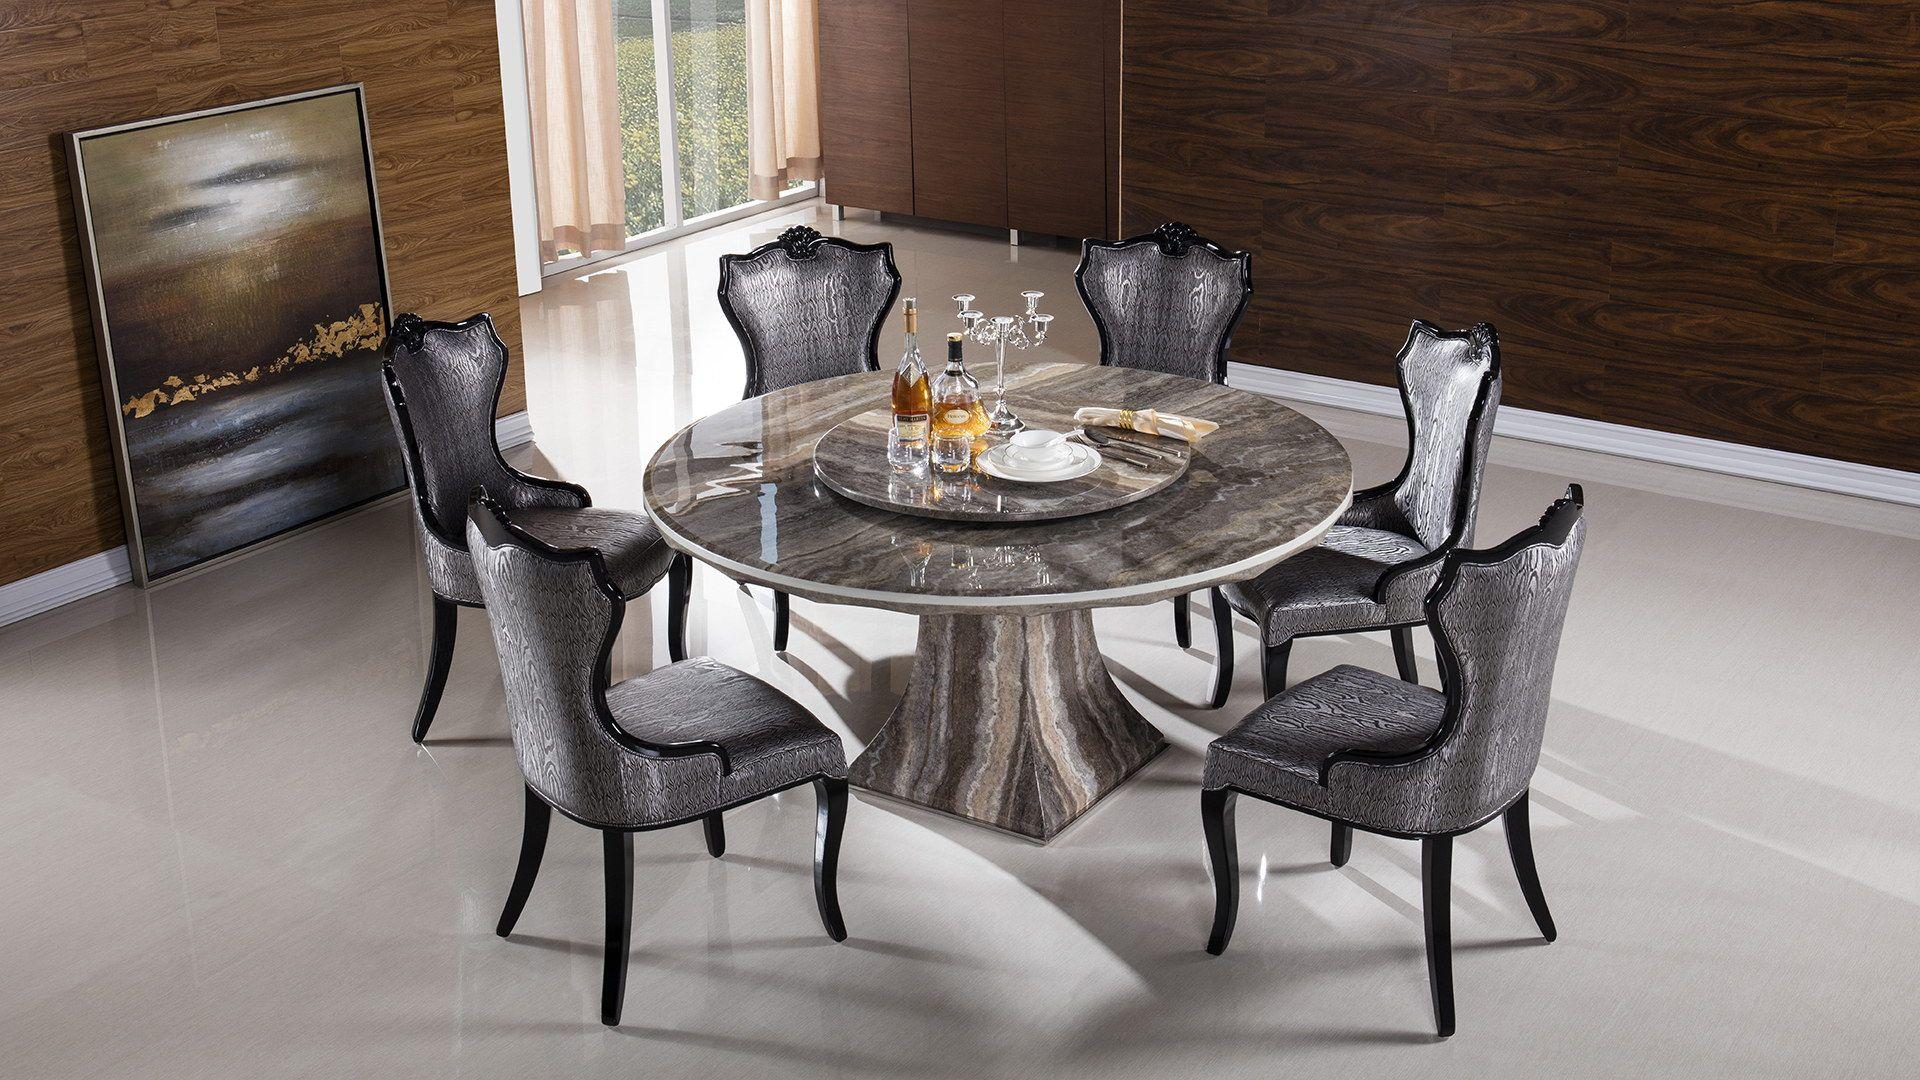 

    
American Eagle Furniture DT-H36 Dining Table Black DT-H36
